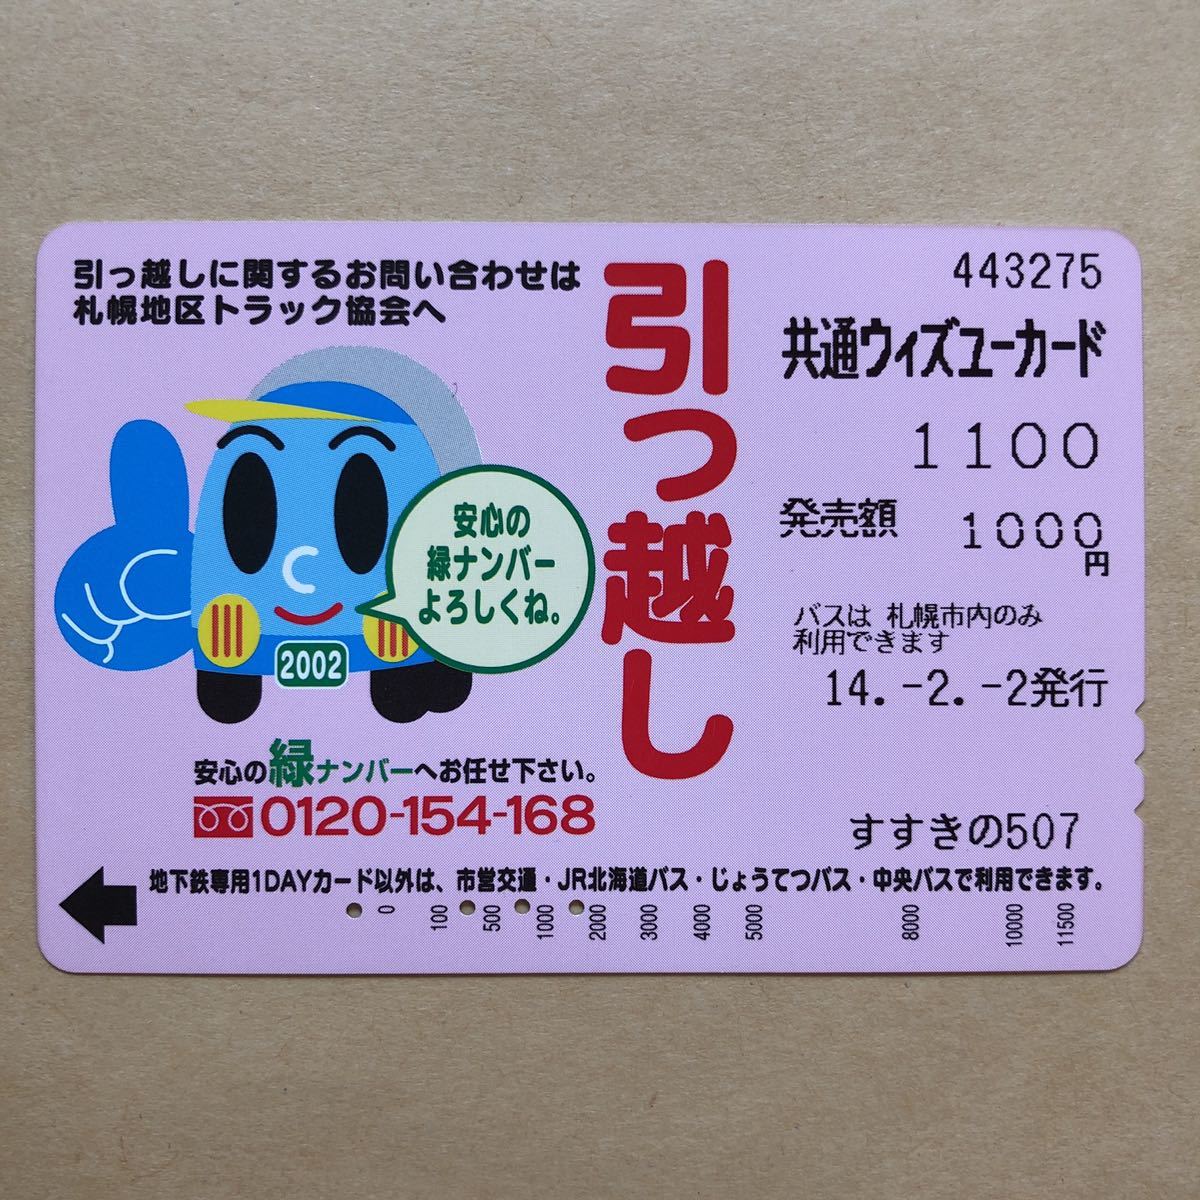 【使用済】 ウィズユーカード 札幌市交通局 引っ越し 安心の緑ナンバー